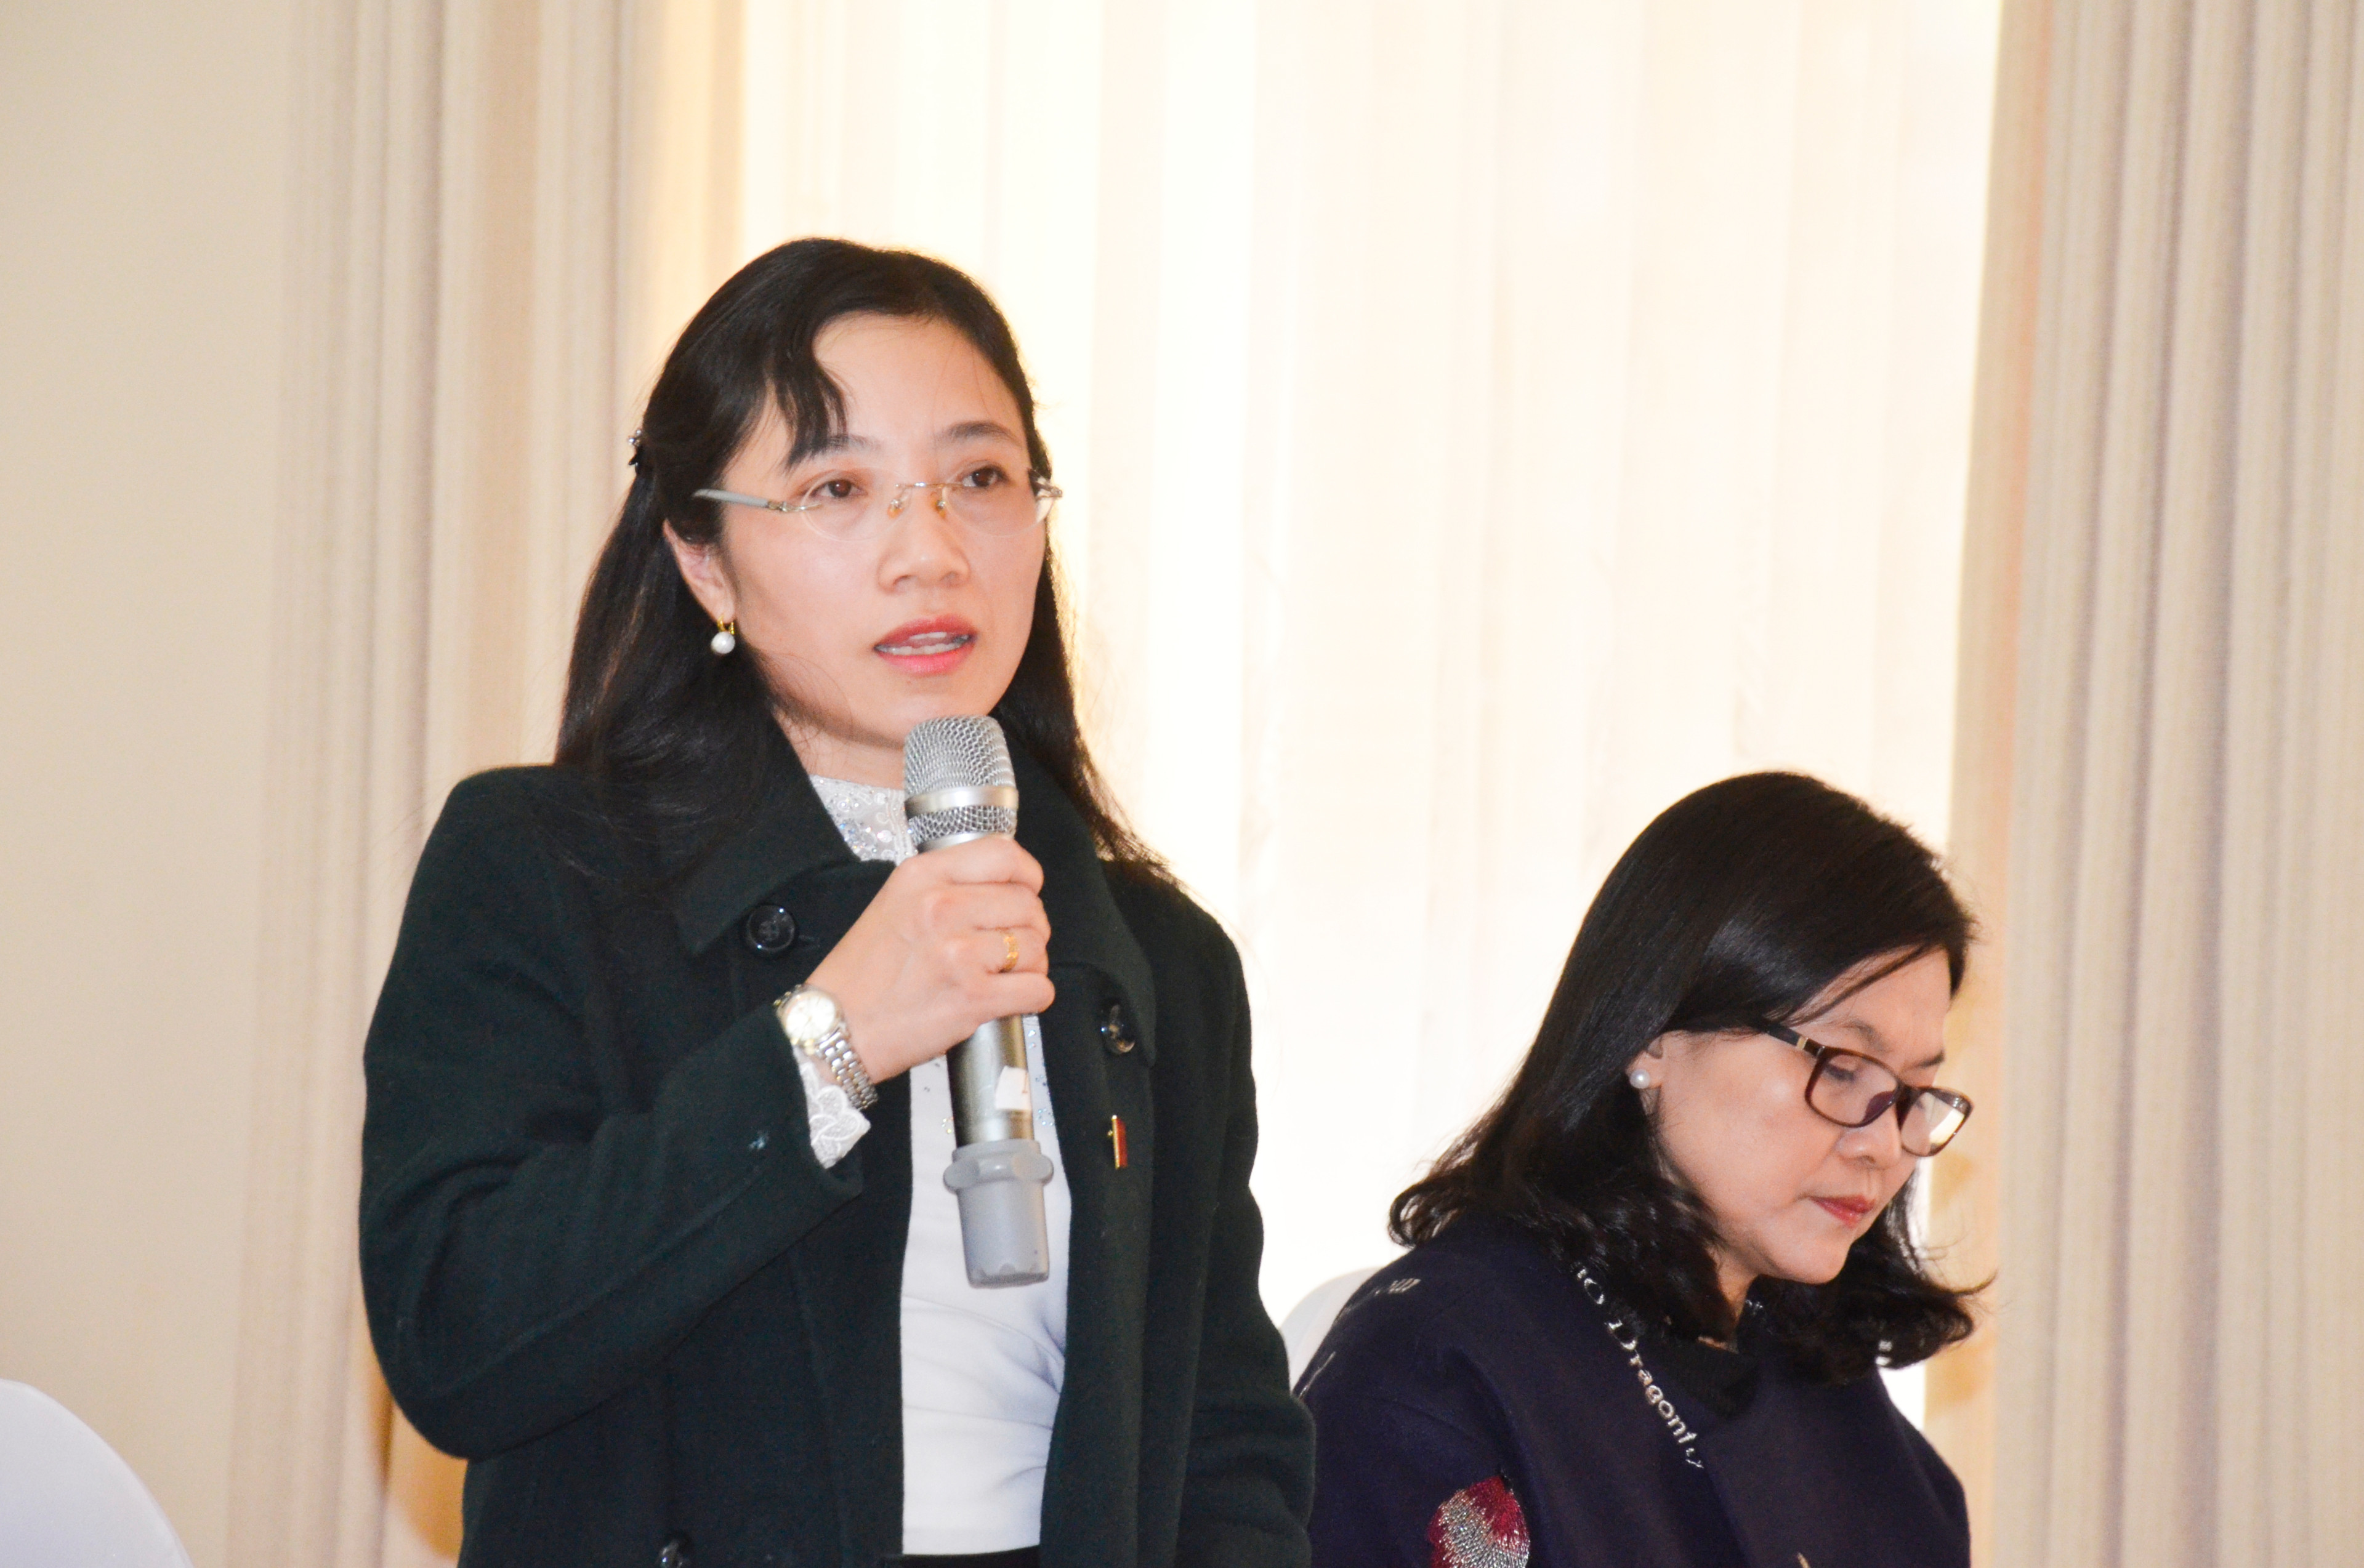 Đại biểu Đinh Thị An Phong phản ánh về ô nhiễm môi trường chưa được giải quyết. Ảnh: Thanh Lê